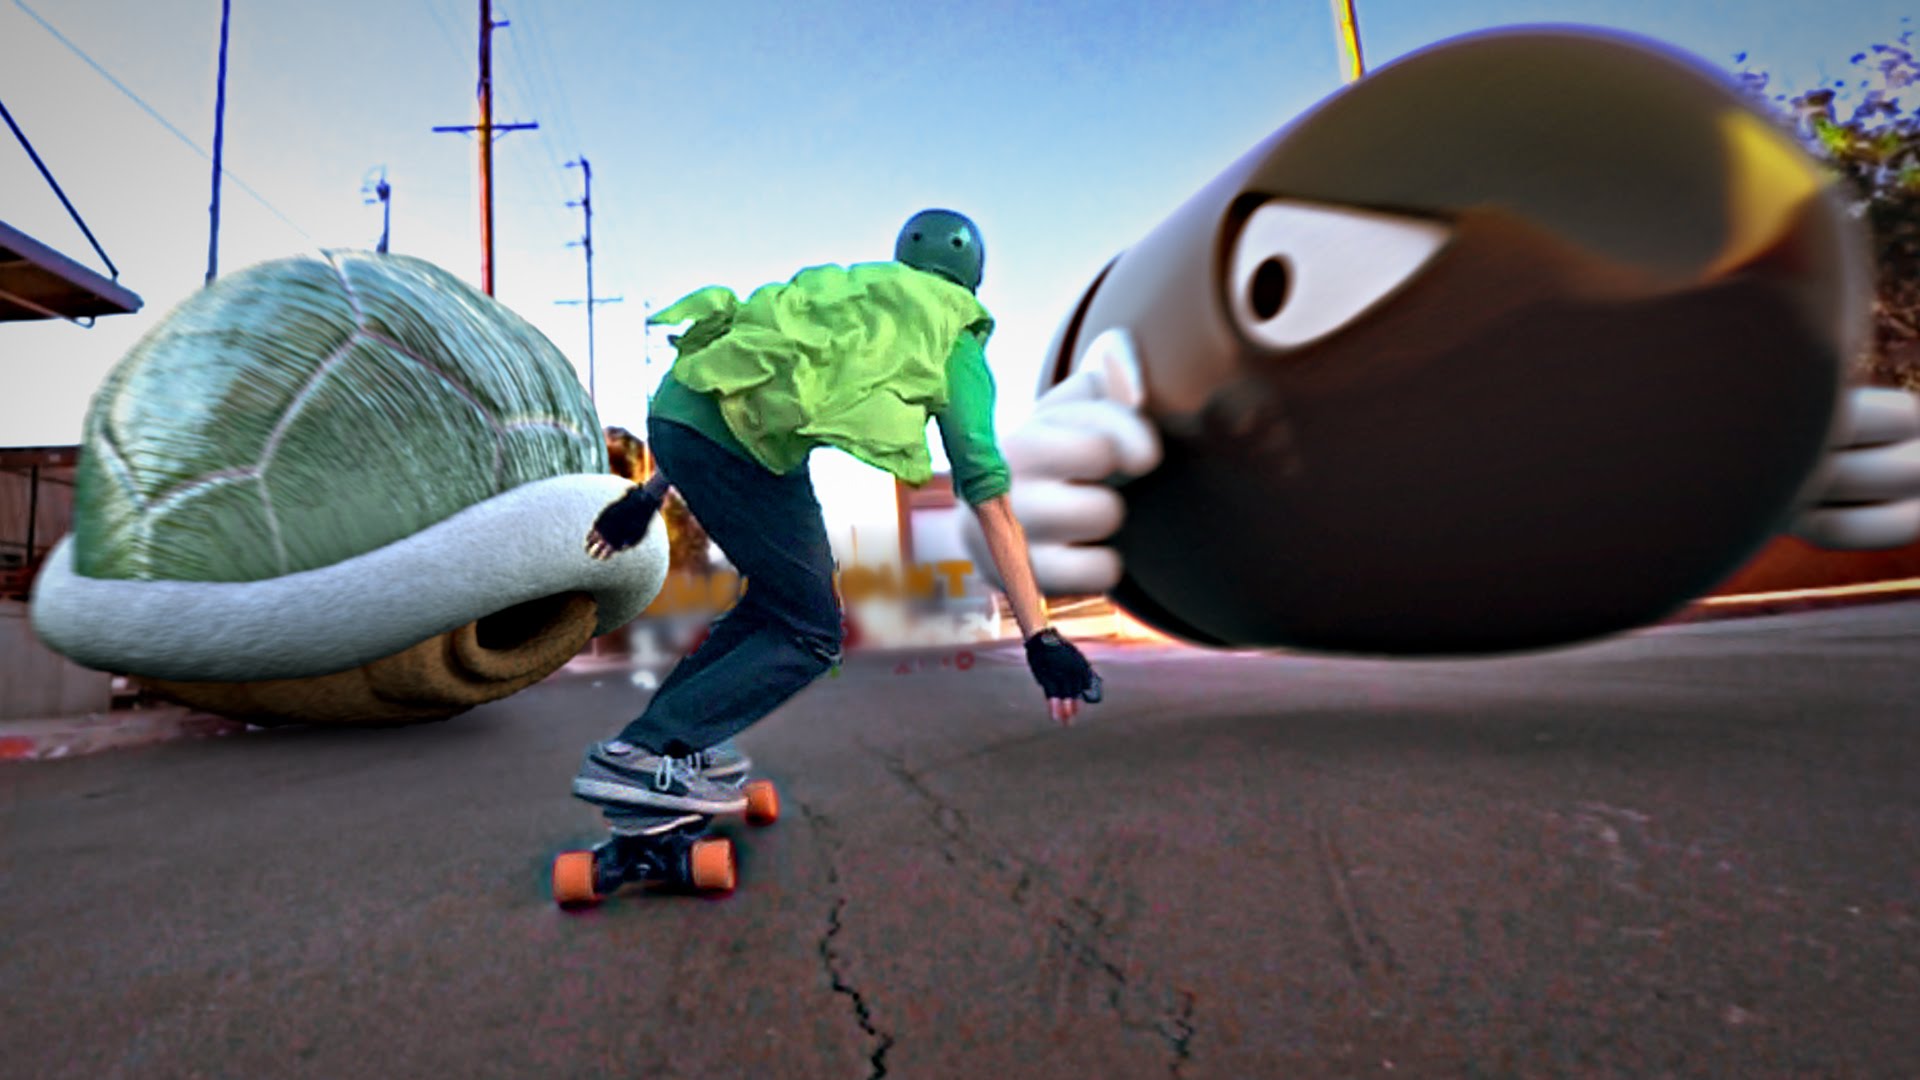 Luigi Skate